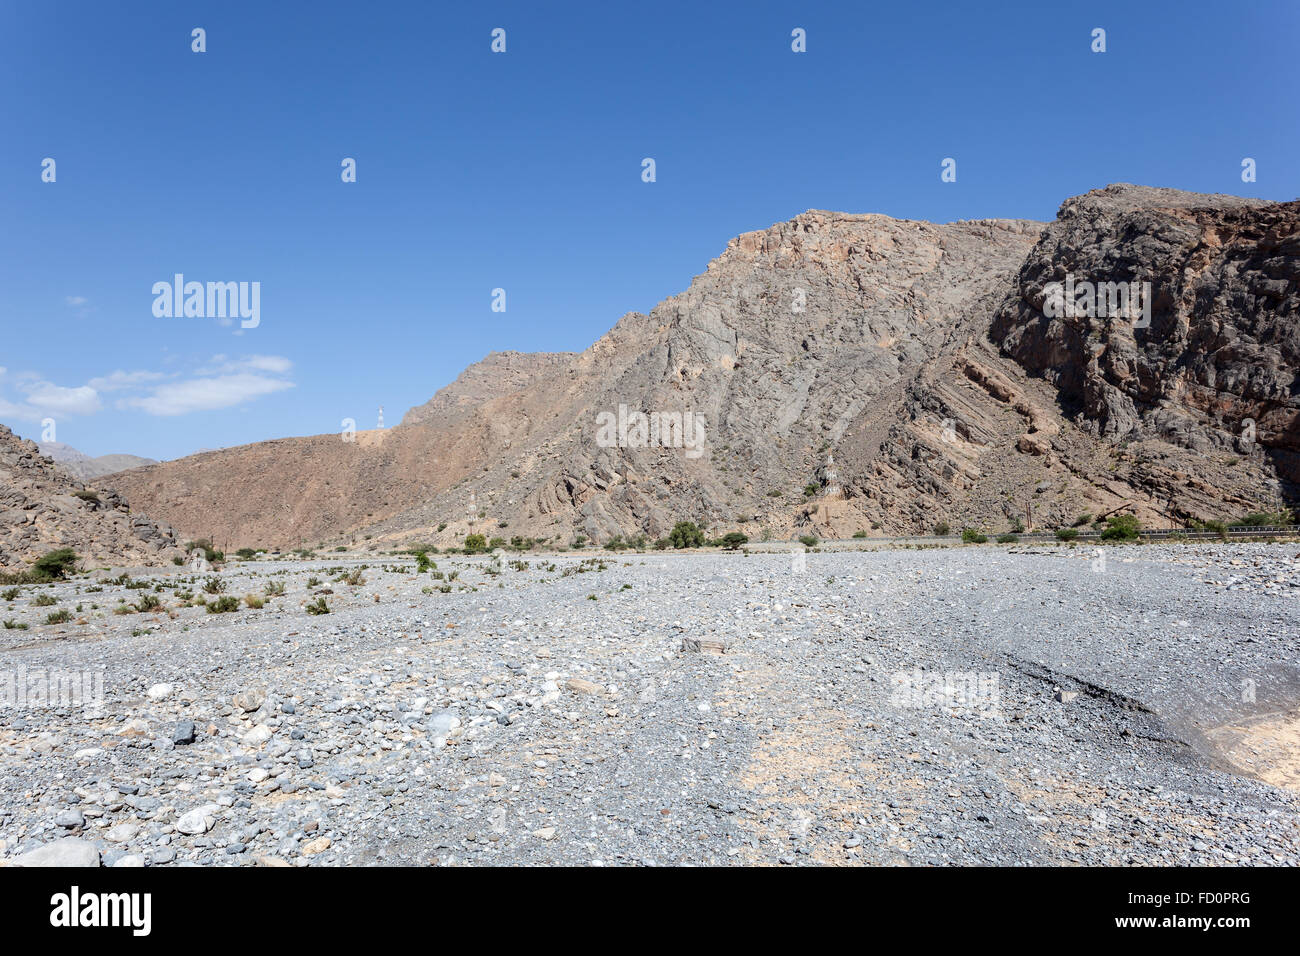 Wadi in Oman Stock Photo